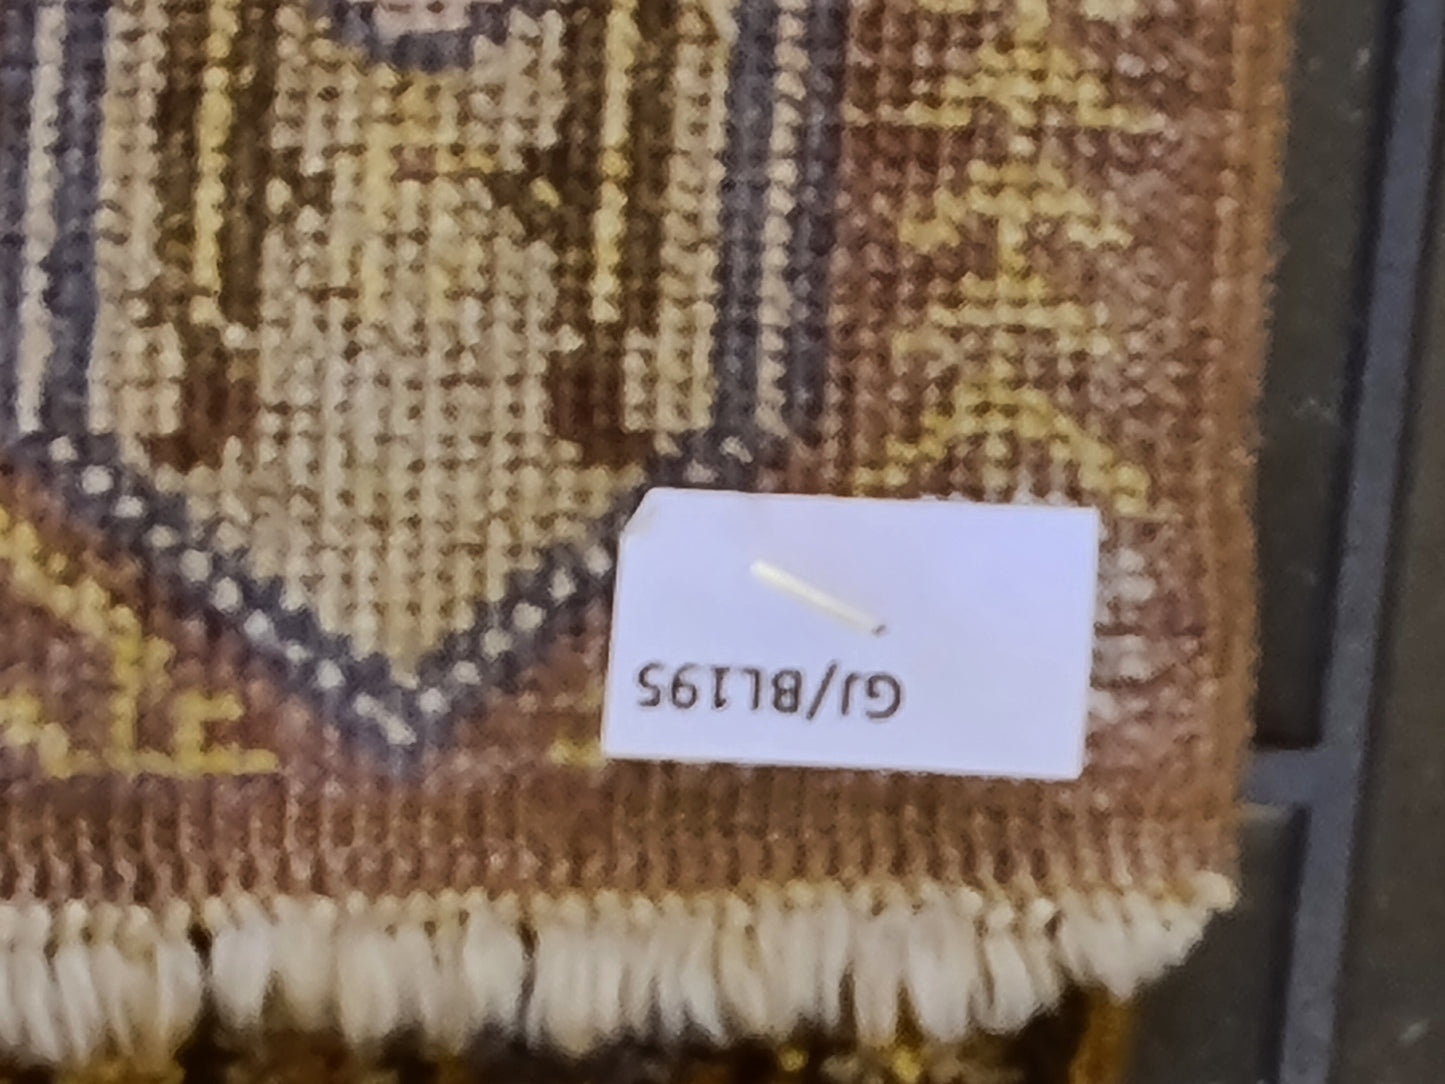 Feiner Handgeknüpfter Kayseri Seiden-Läufer Sammlerstück aus der Türkei 223x87cm